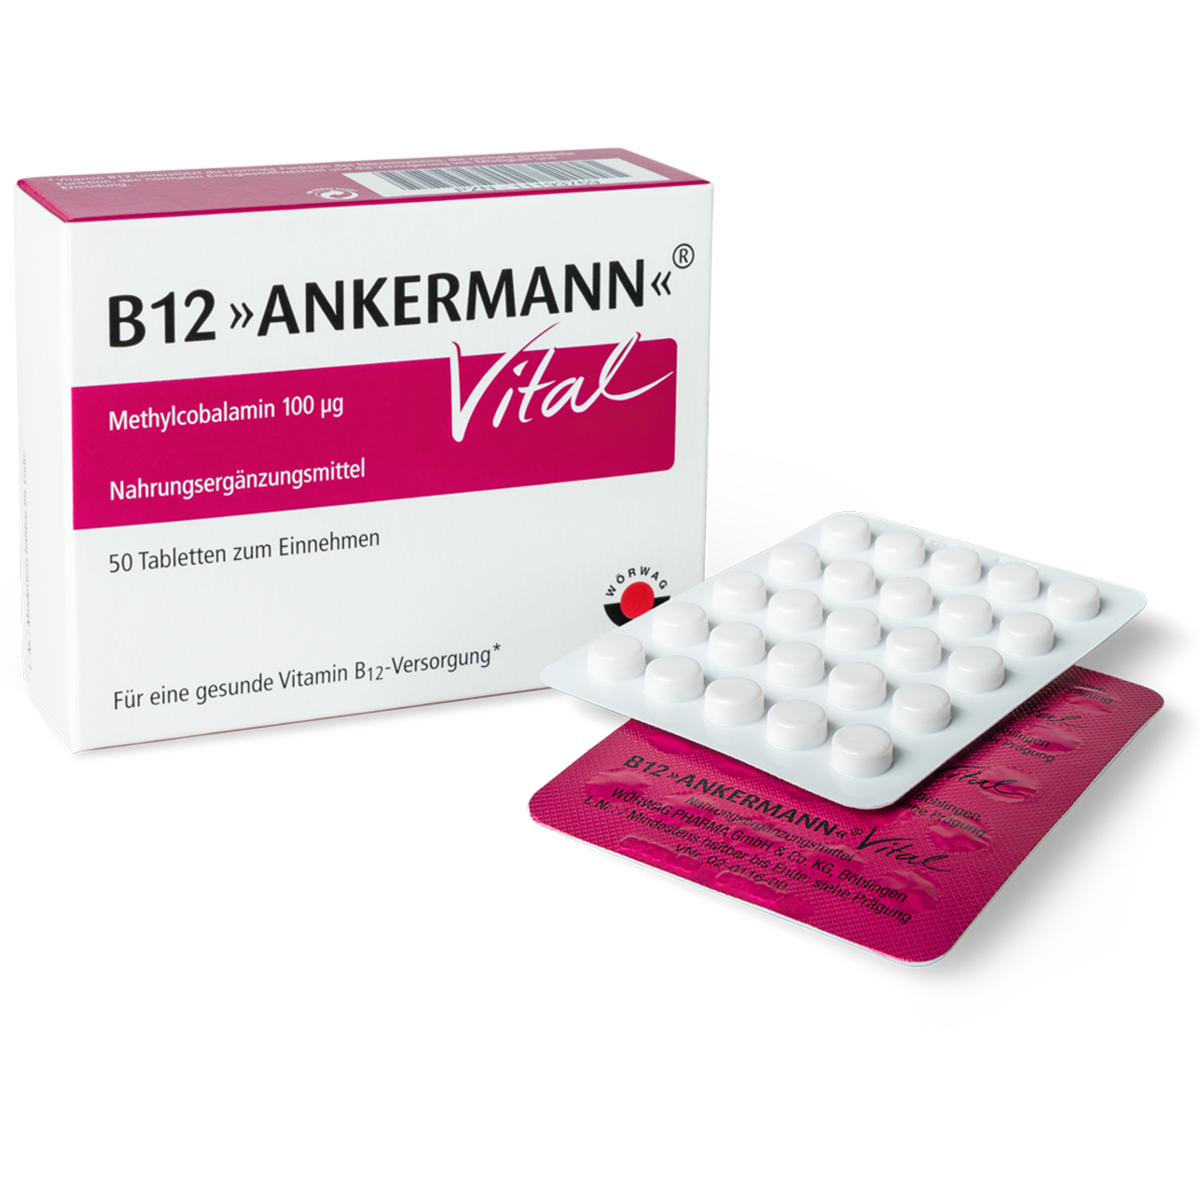 B12 Ankermann Vital compresse 100 pz - Erbofarma farmaci, generici,  omeopatici e integratori alimentari